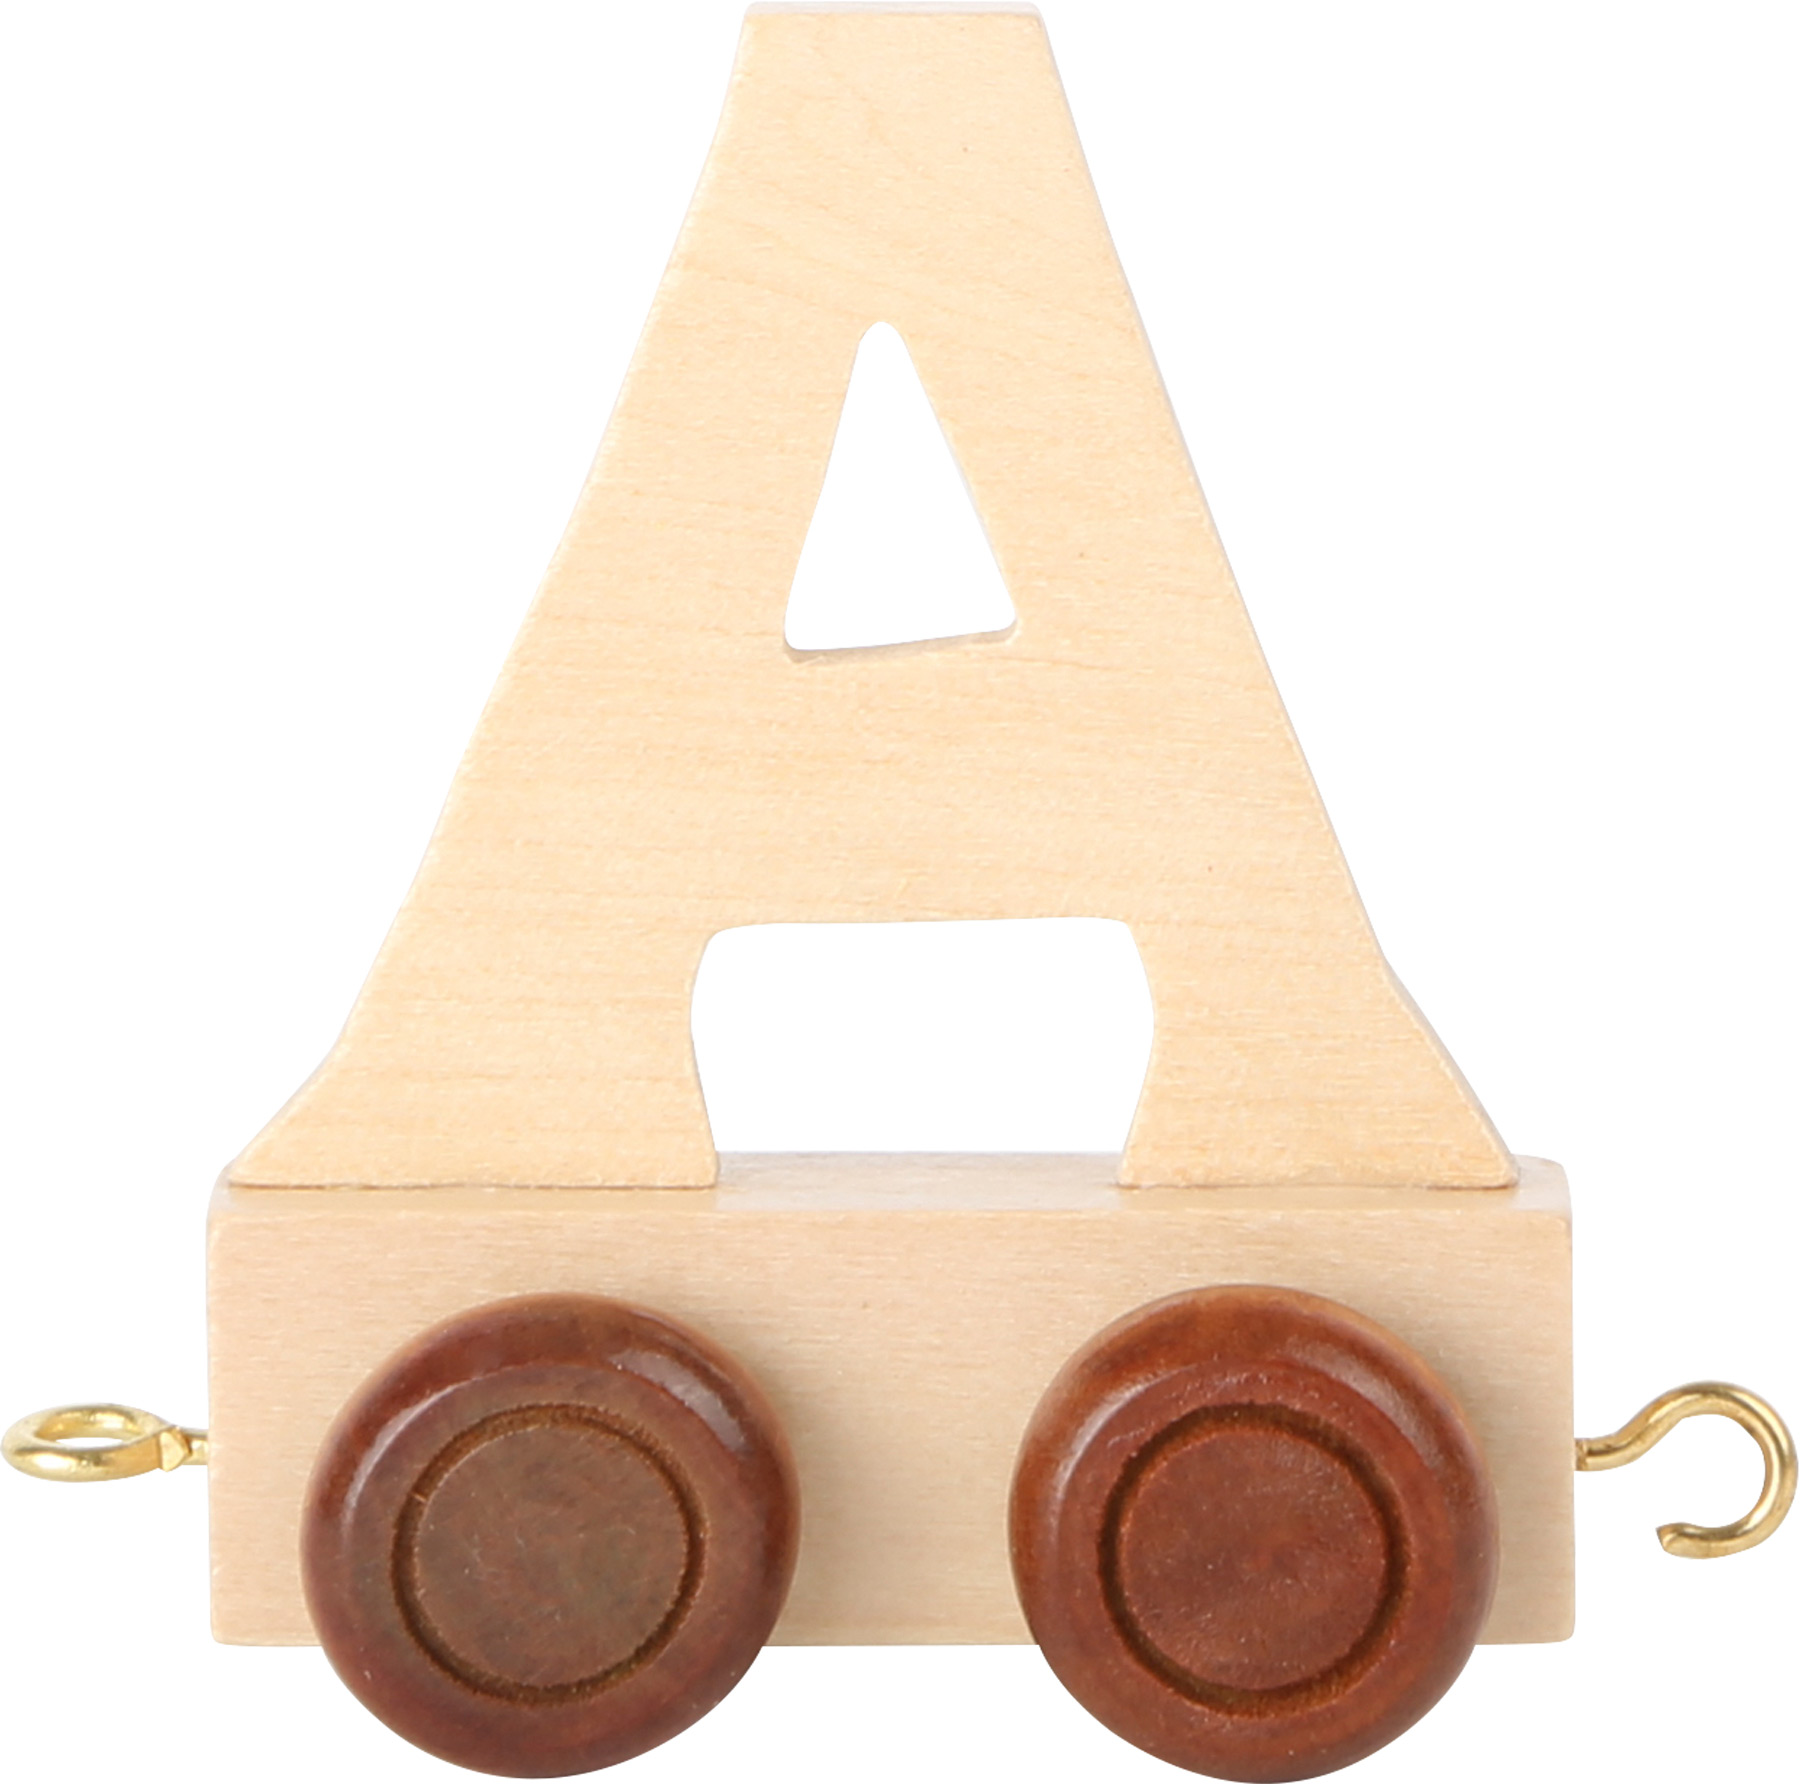 Dřevěný vláček vláčkodráhy abeceda písmeno A